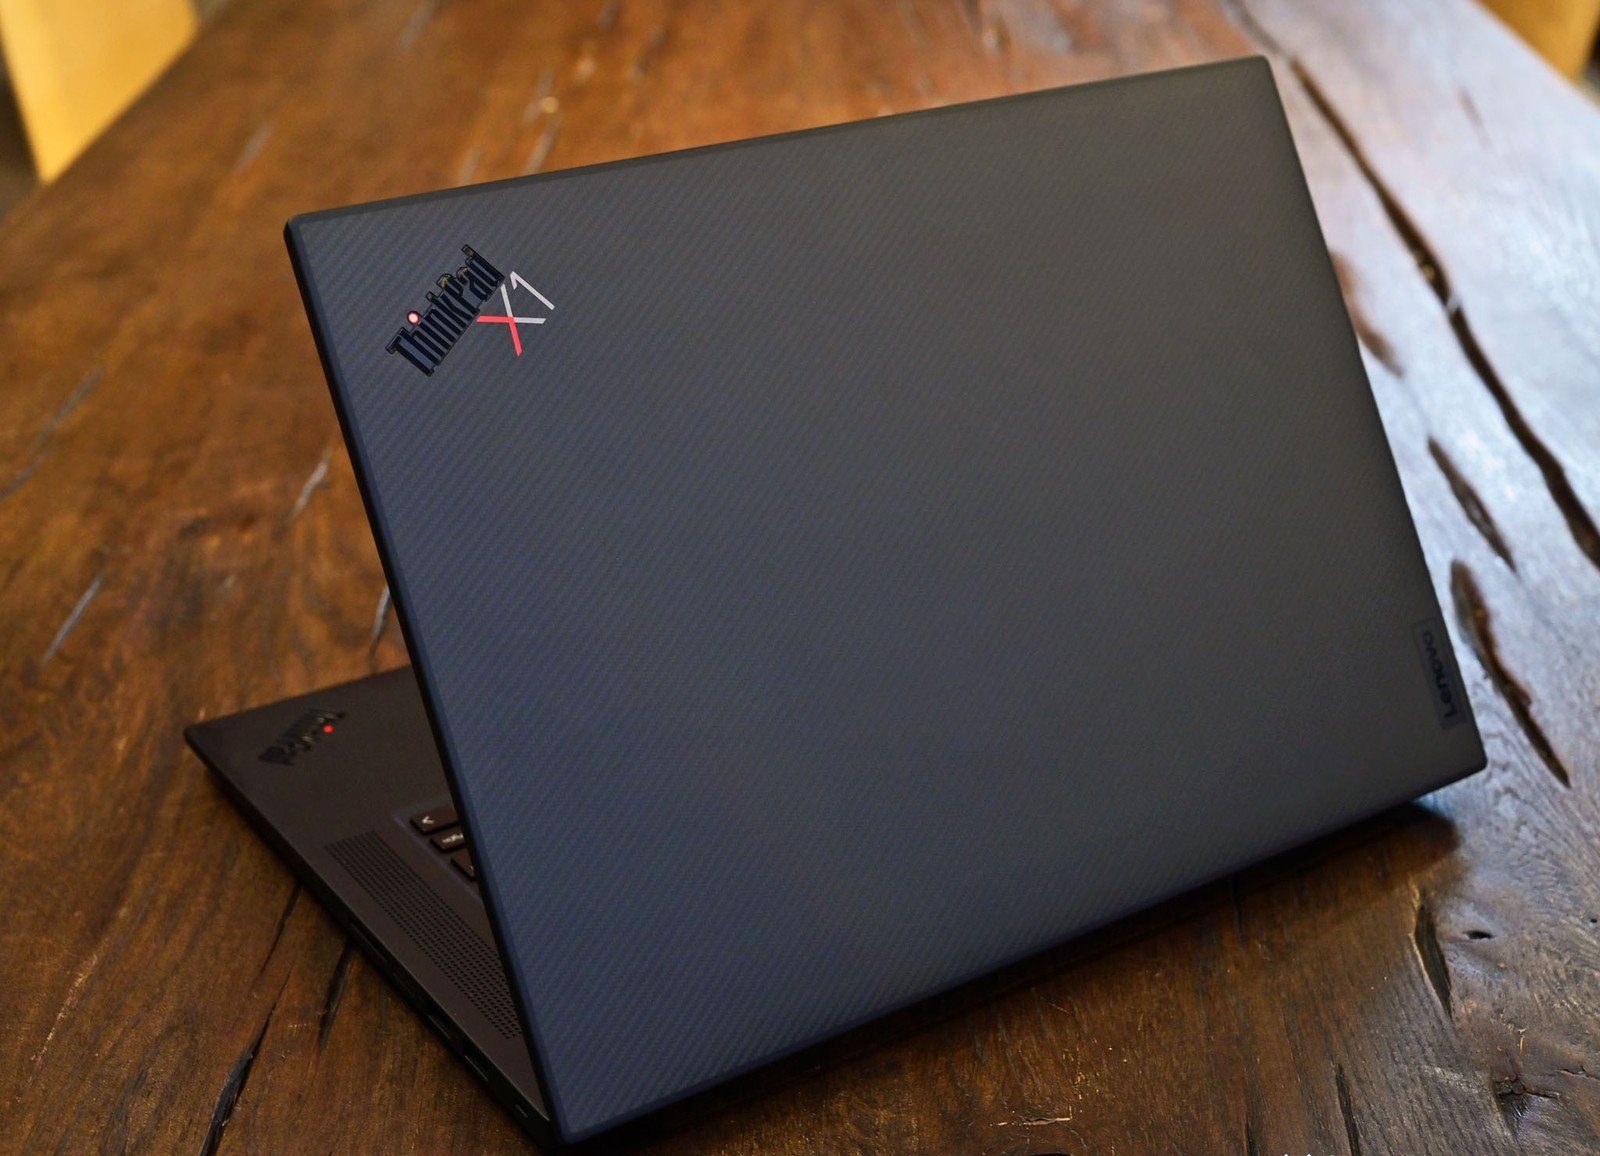 ThinkPad X1 Extreme Gen 4 có cấu hình cực kỳ mạnh mẽ